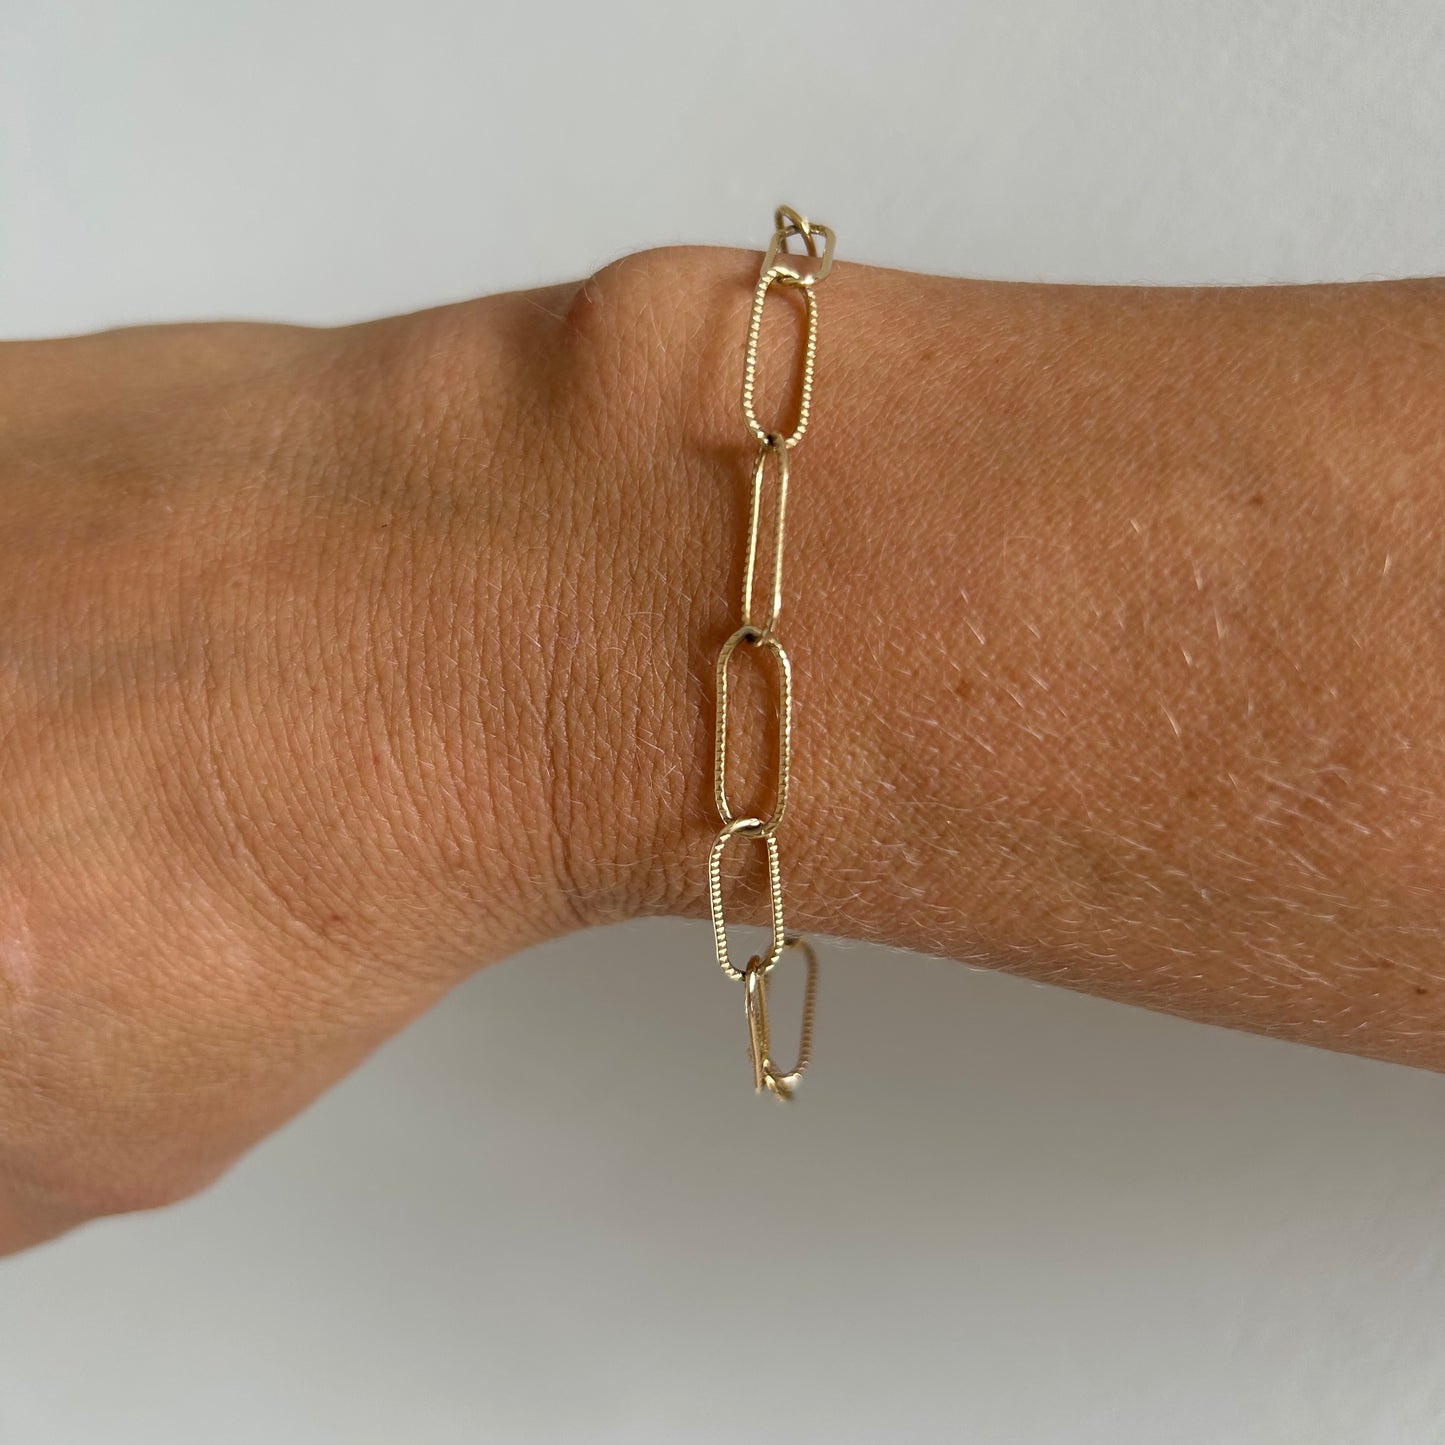 Textured paper clip chain bracelet